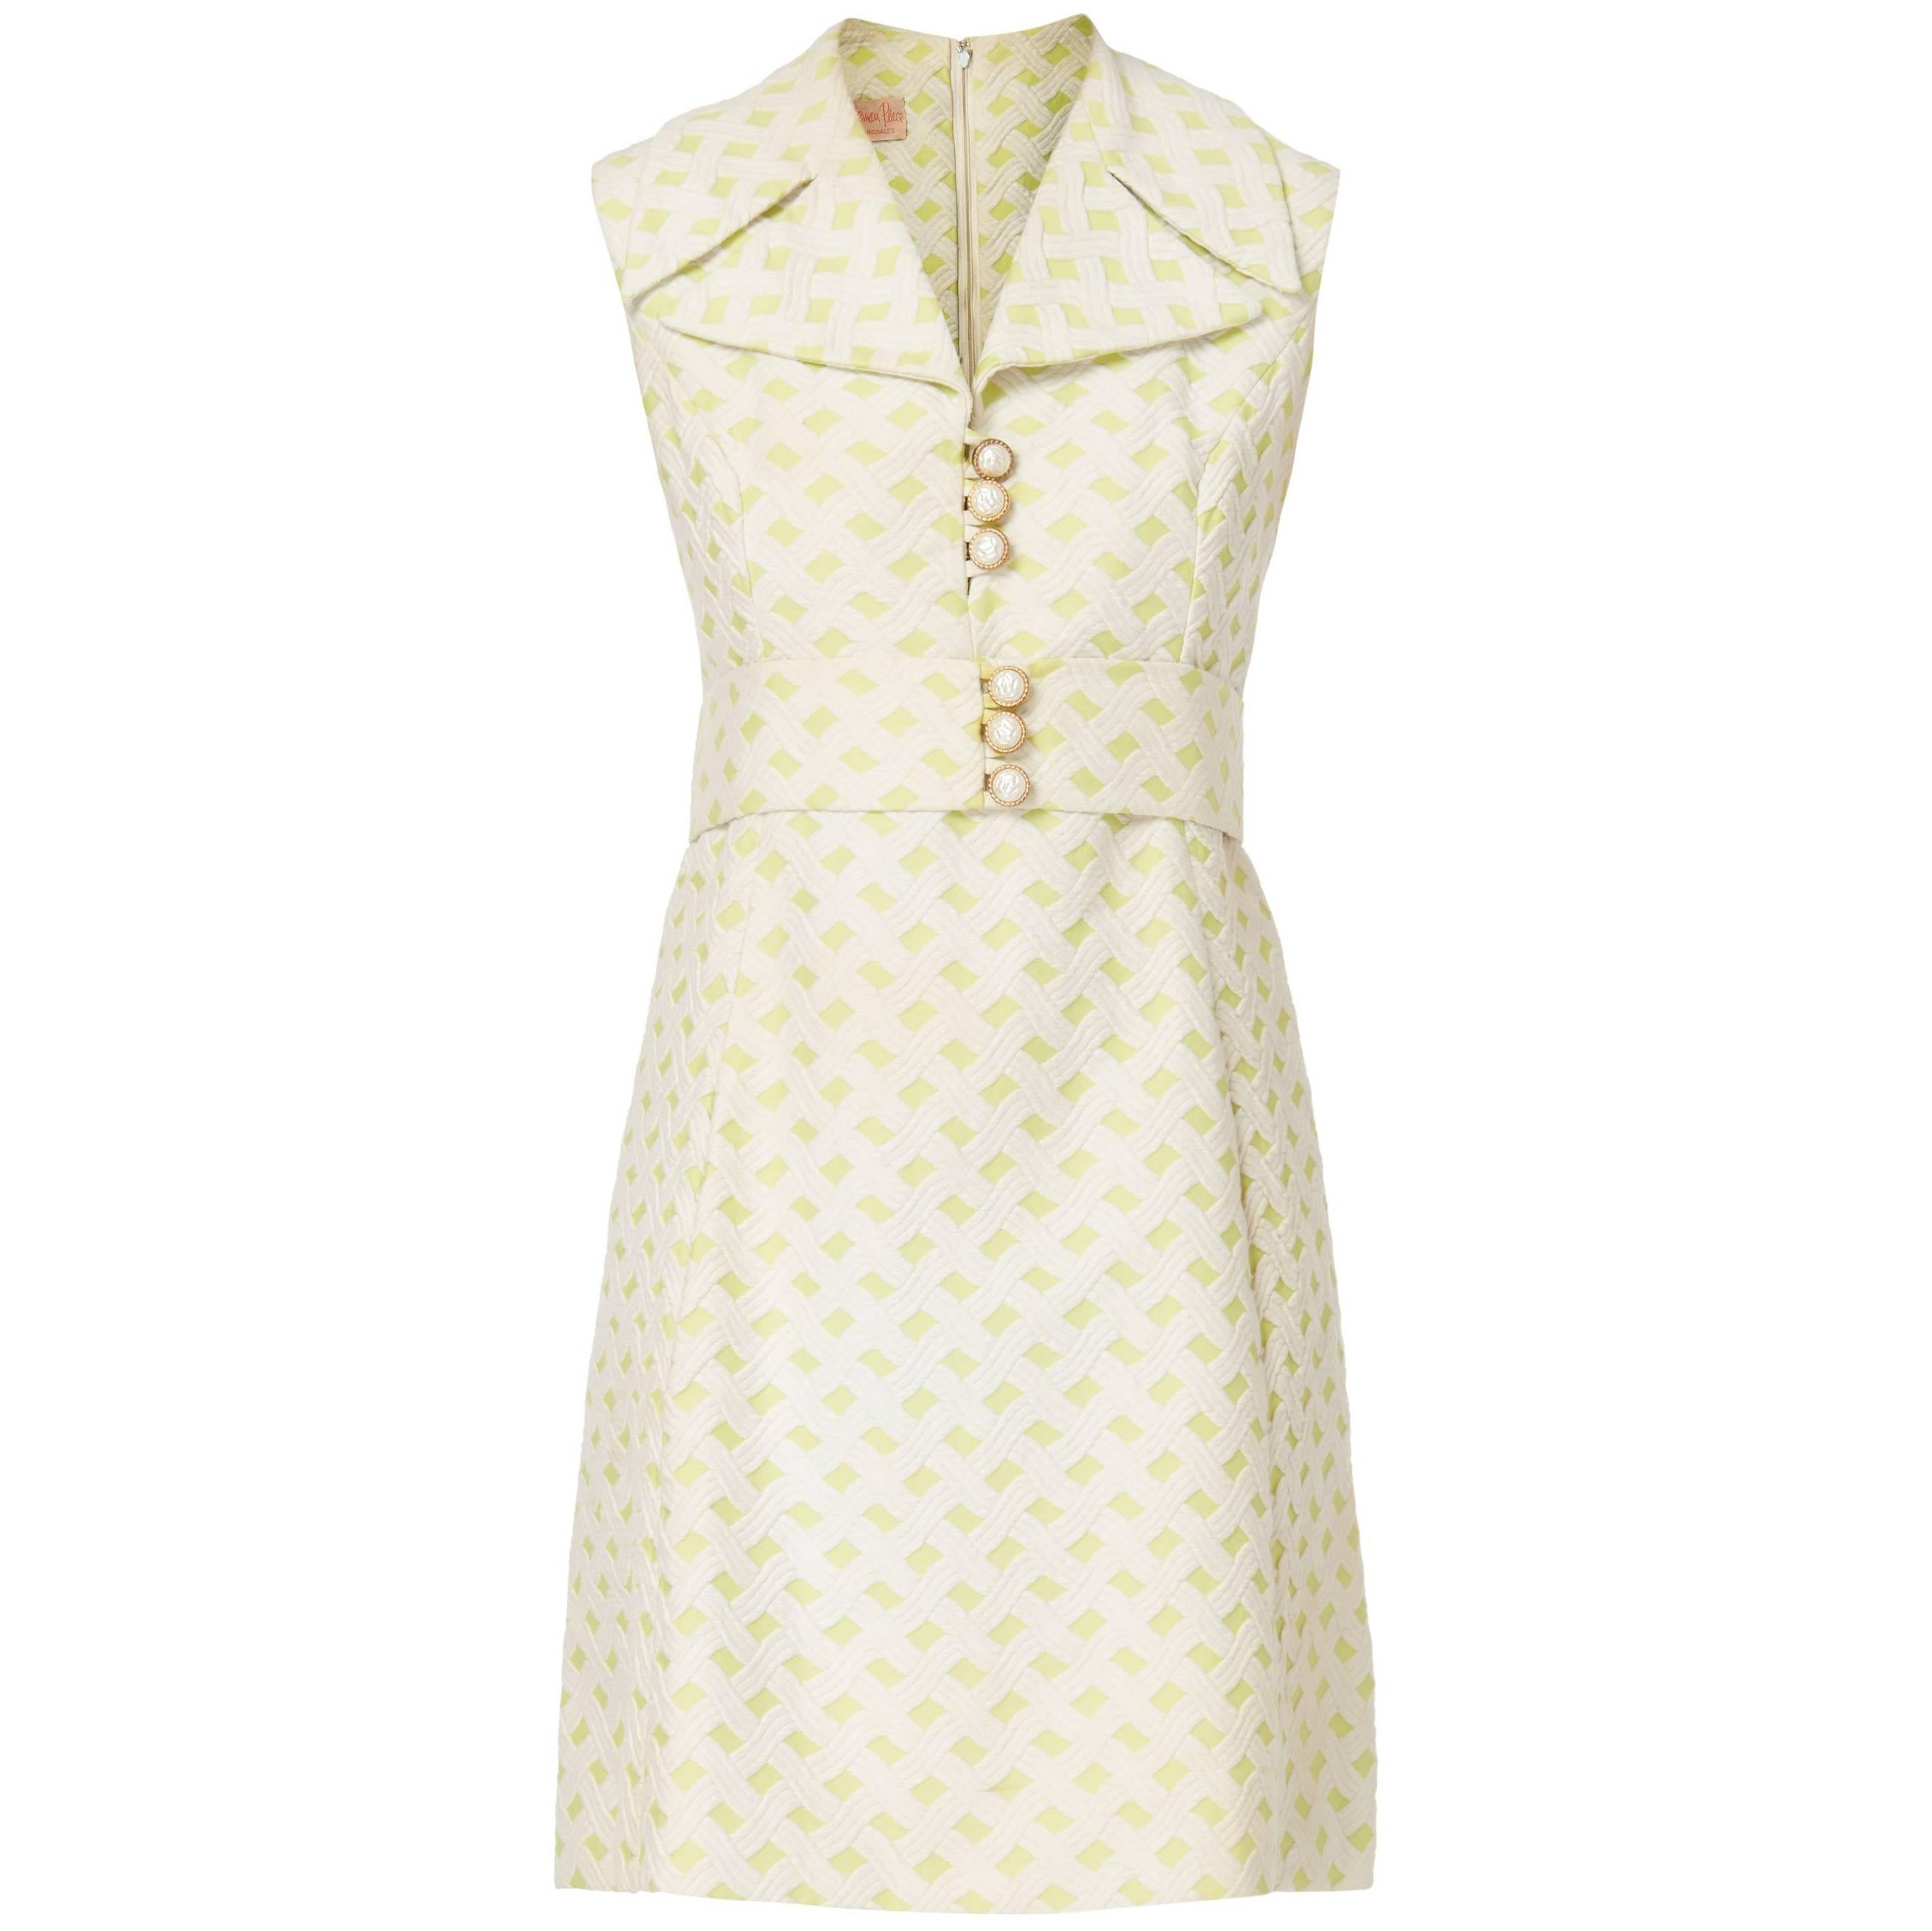 Bloomingdales sleeveless dress, circa 1968